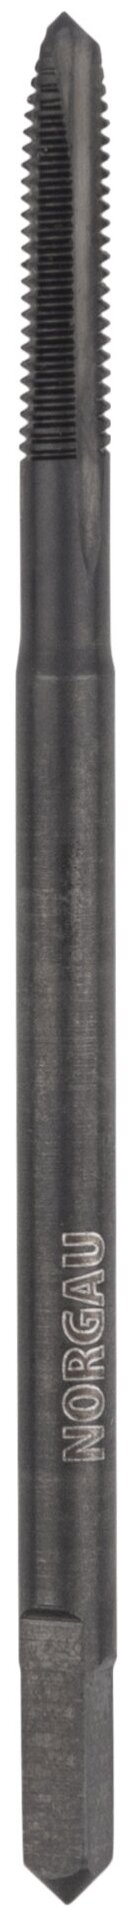 Метчик М25 NORGAU Industrial для обработки сквозных отверстий из стали HSSE (Co5%) с парооксидированной поверхностью машинный